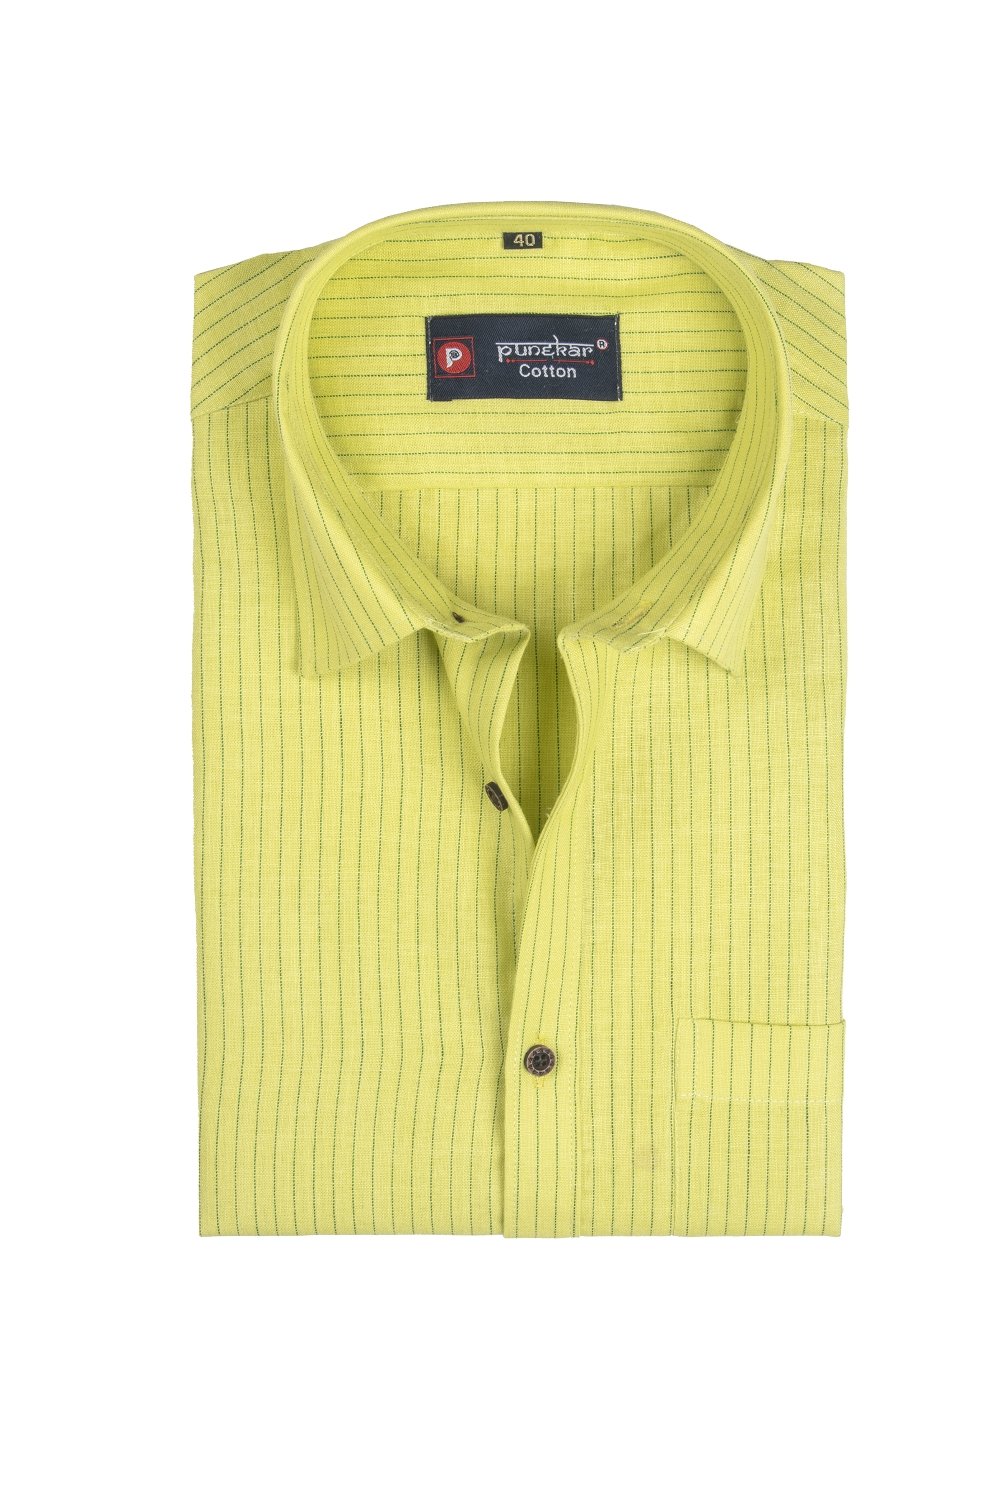 Punekar Cotton Light Yellow Color Linning Criss Cross Woven Cotton Shirt for Men&